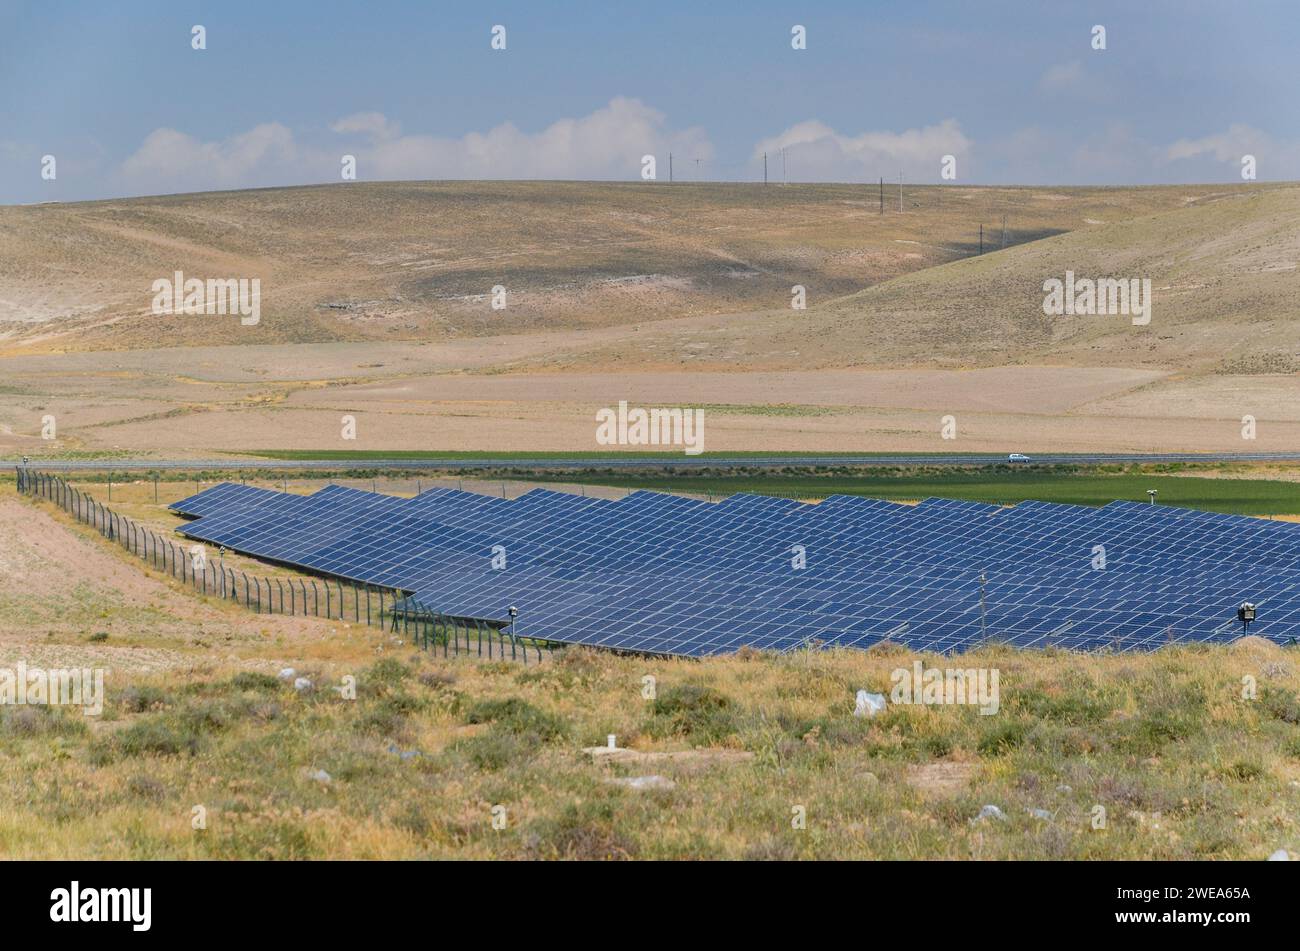 Panneaux solaires dans une rangée à une ferme d'énergie renouvelable dans un champ herbacé sec avec des collines en arrière-plan, pris dans l'est de la Turquie Banque D'Images